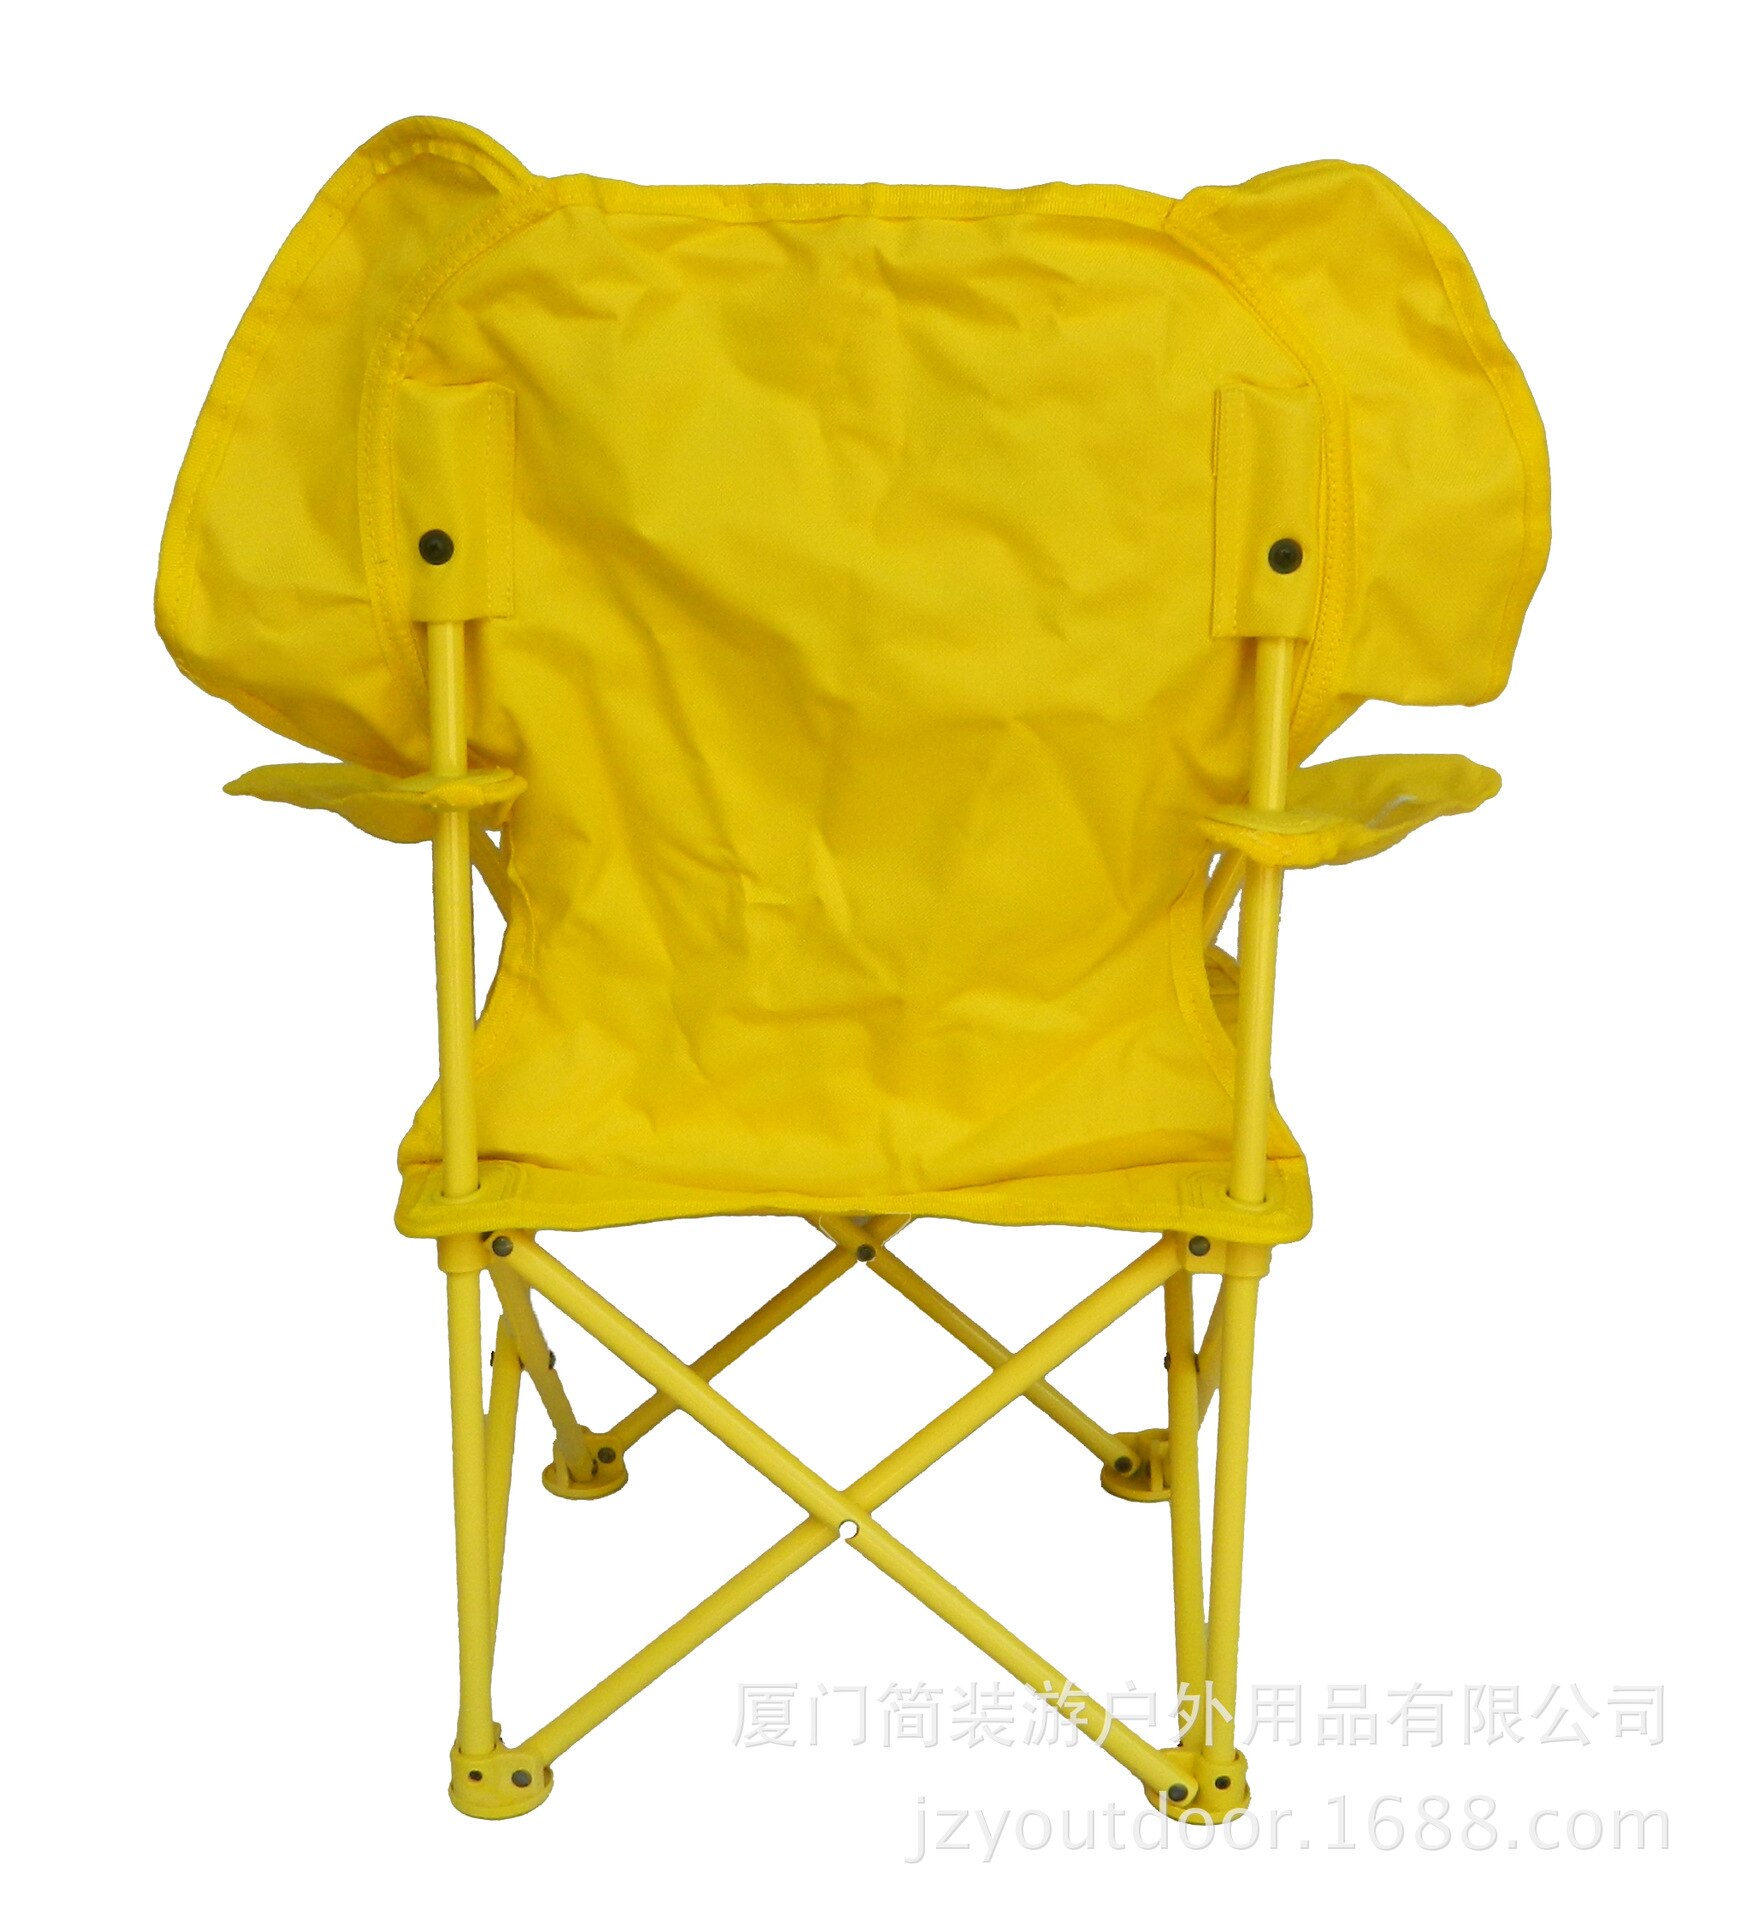 Til børn foldestol lejrstol bærbar camping strand udendørs stol fiskestol kompakt i bærepose